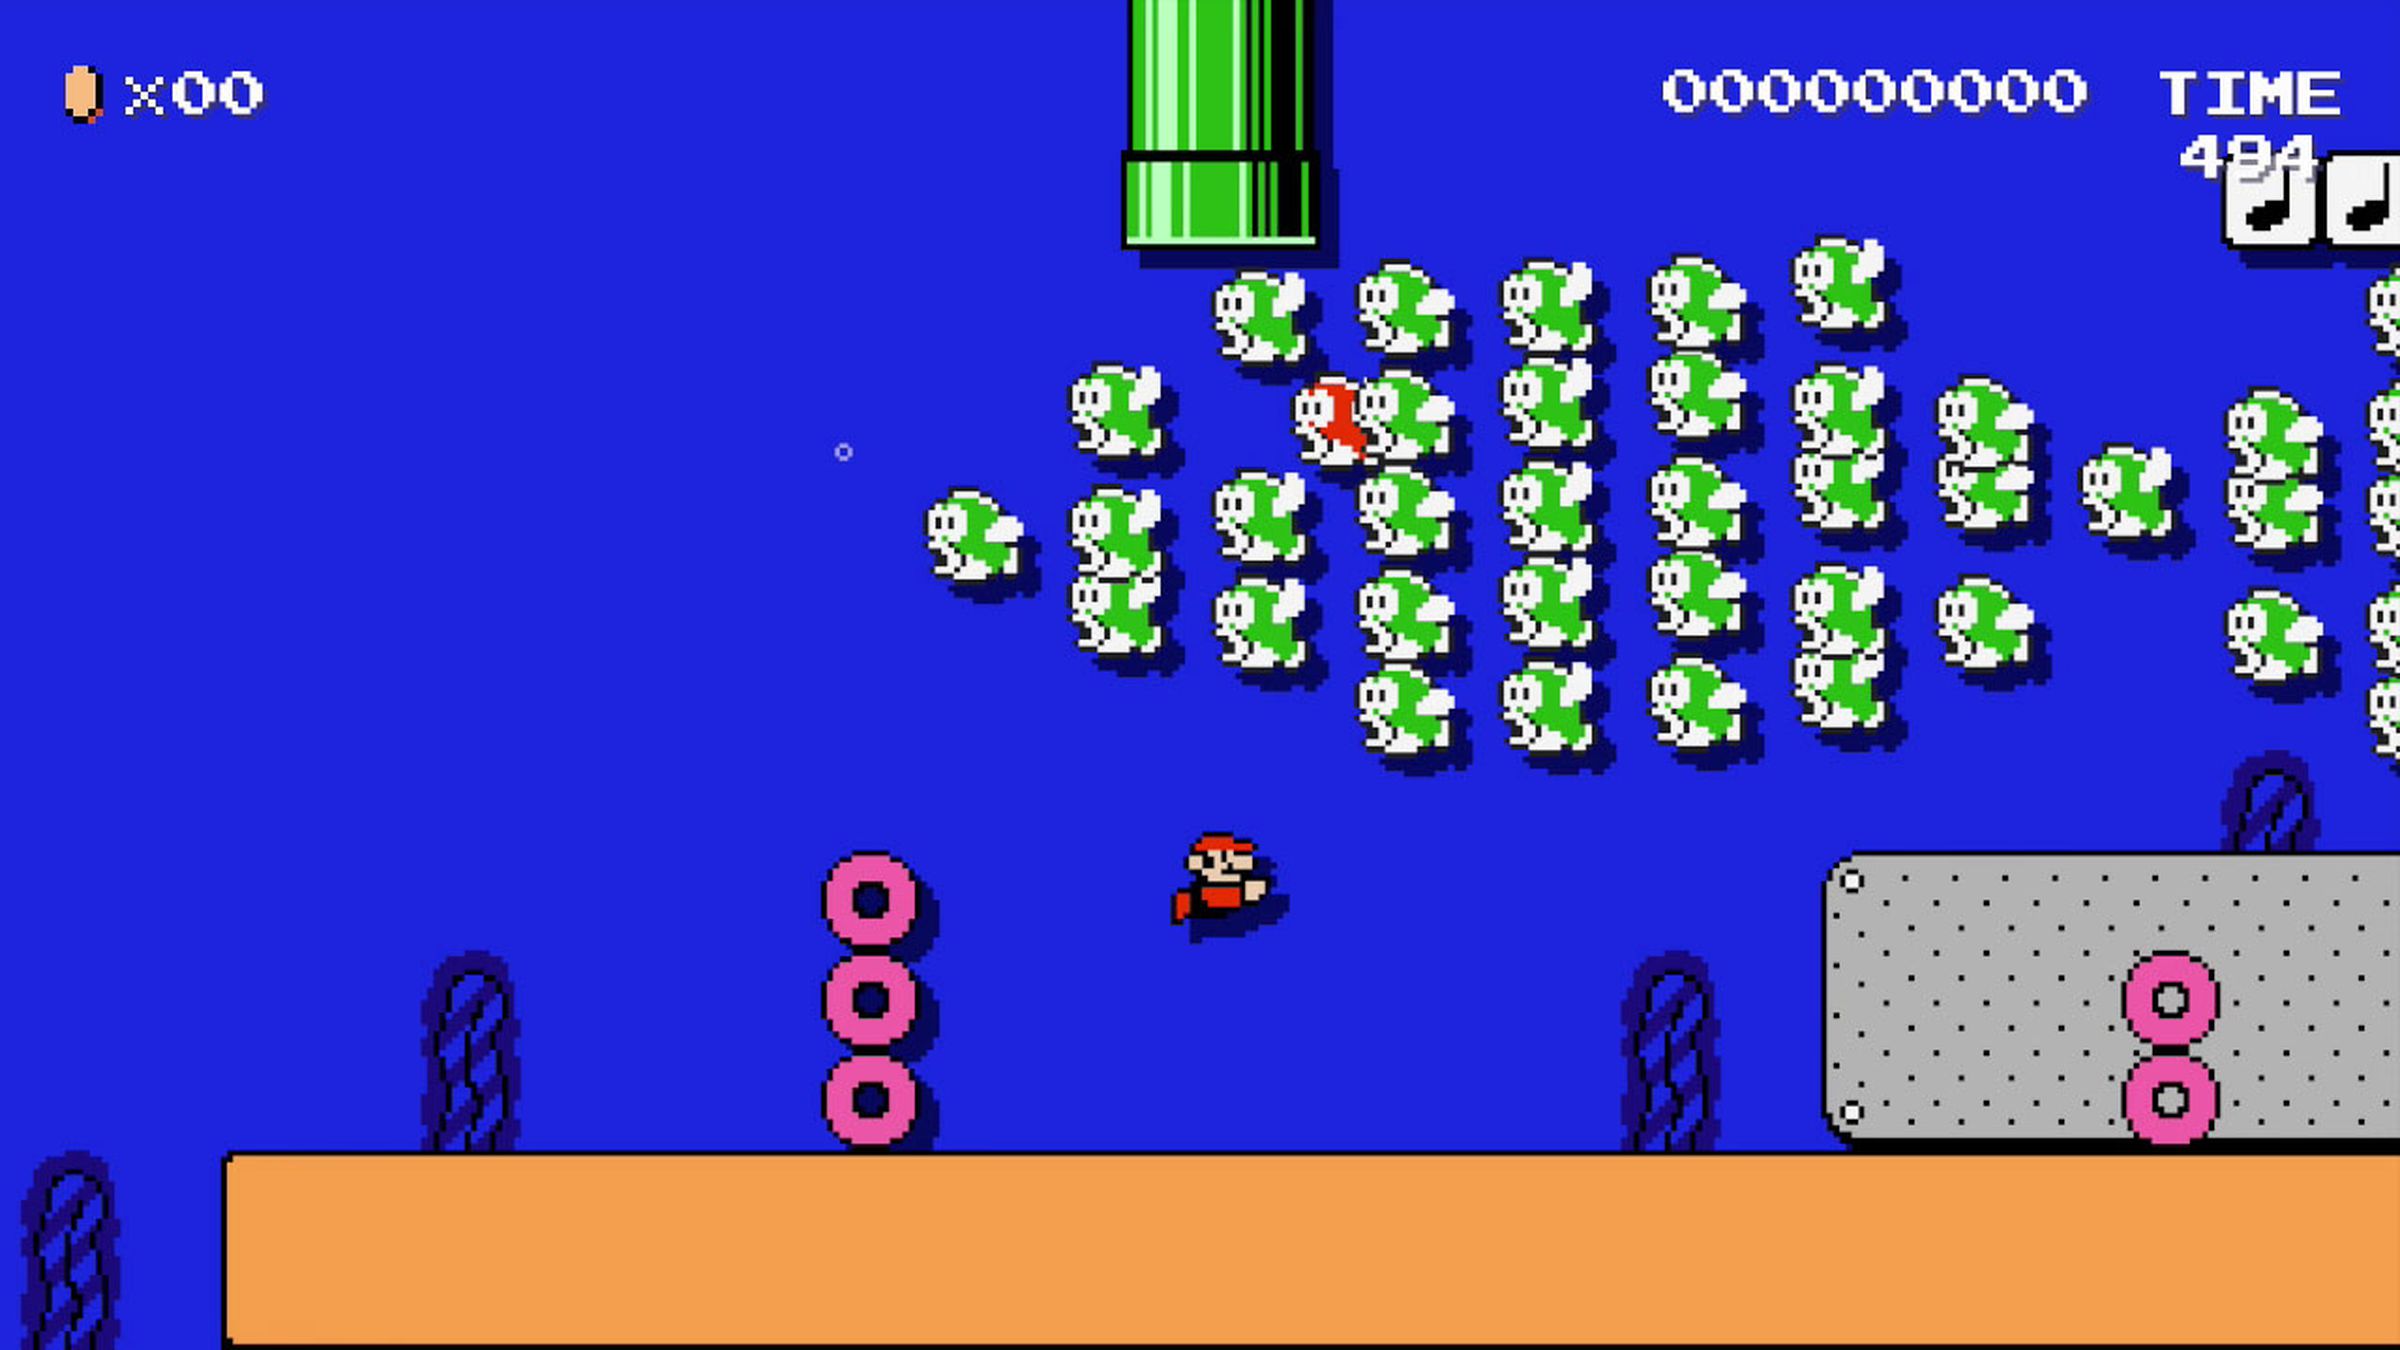 A screenshot from the Wii U game Super Mario Maker.